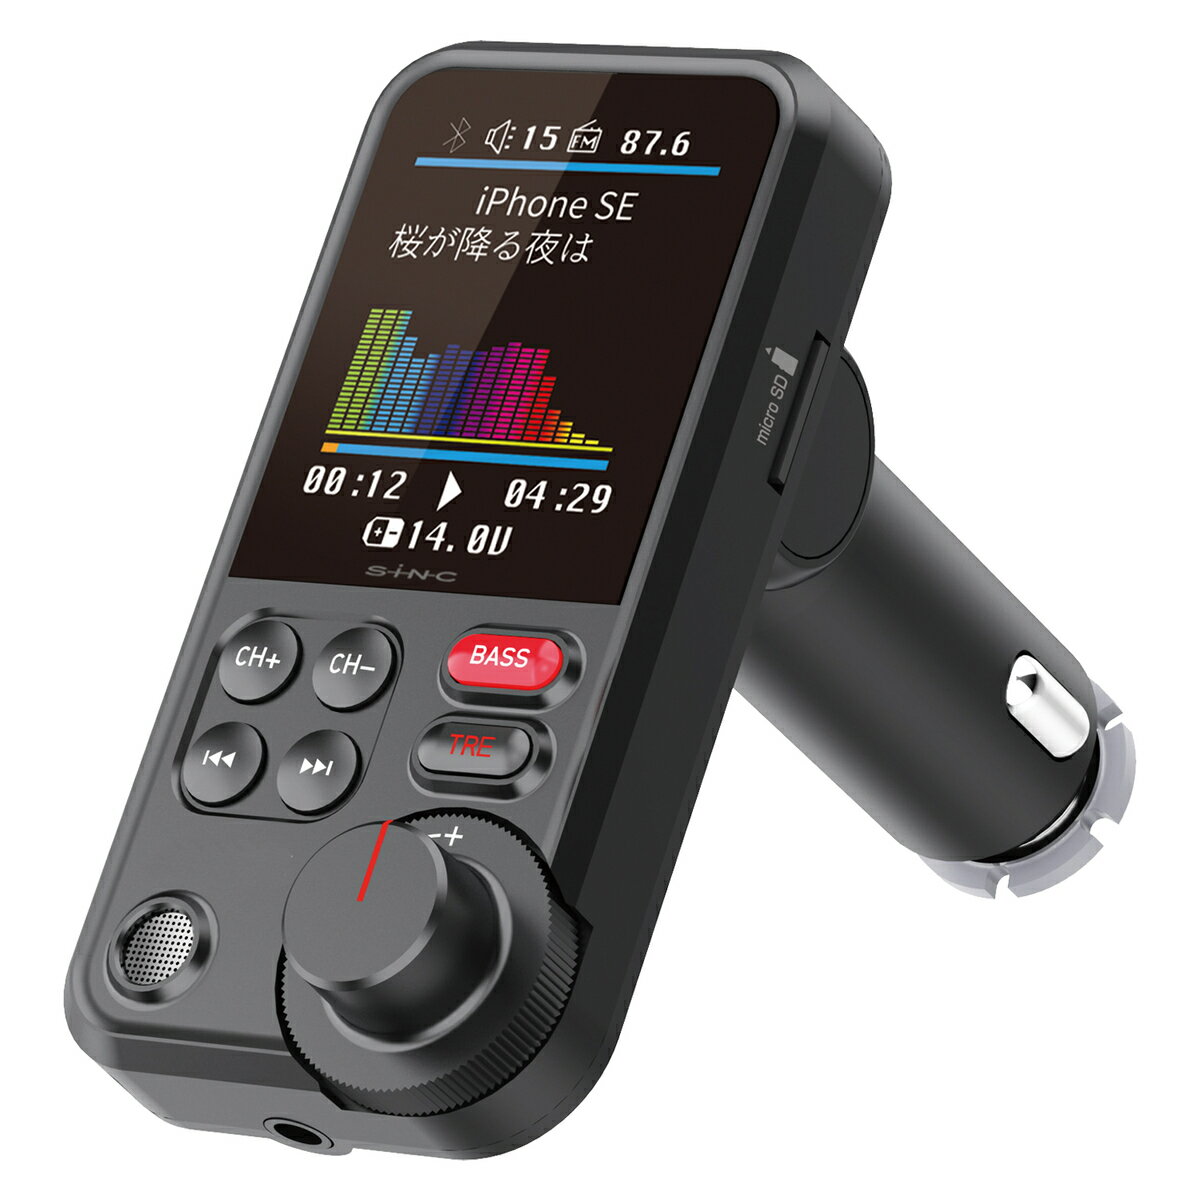 BTF110 Bluetooth FMトランスミッター ver 5.0 トランスミッター 音楽再生 カーステレオ ラジオ シガーソケット 高音質 充電器 カーチャージャー カー用品 車で音楽 音楽 スマホ スマートホン iPhone ブルートゥース